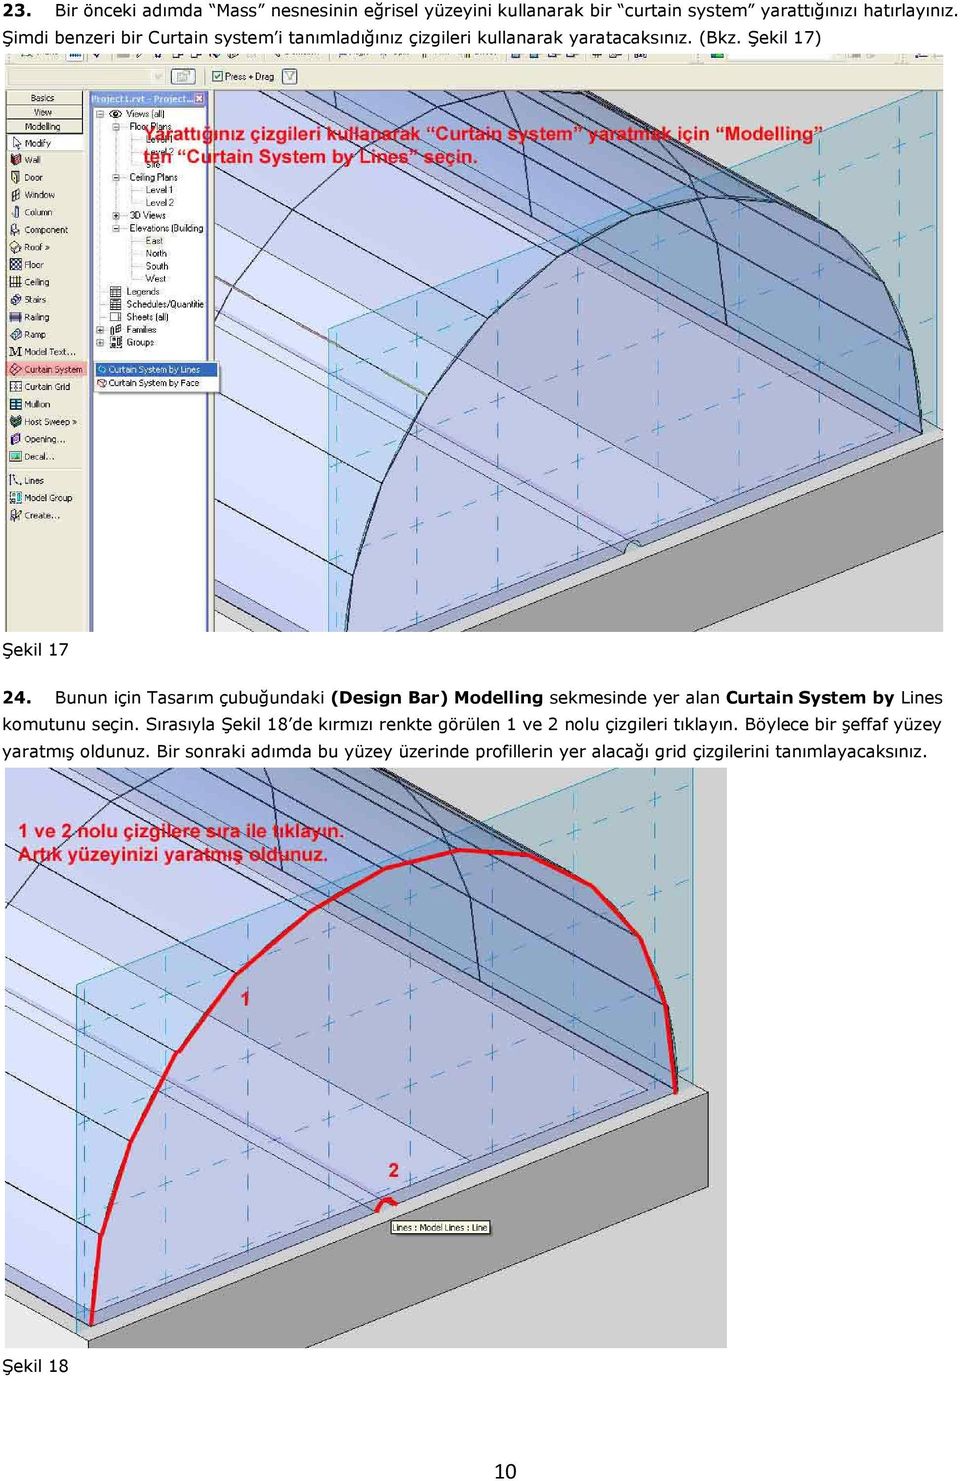 Bunun için Tasarım çubuğundaki (Design Bar) Modelling sekmesinde yer alan Curtain System by Lines komutunu seçin.